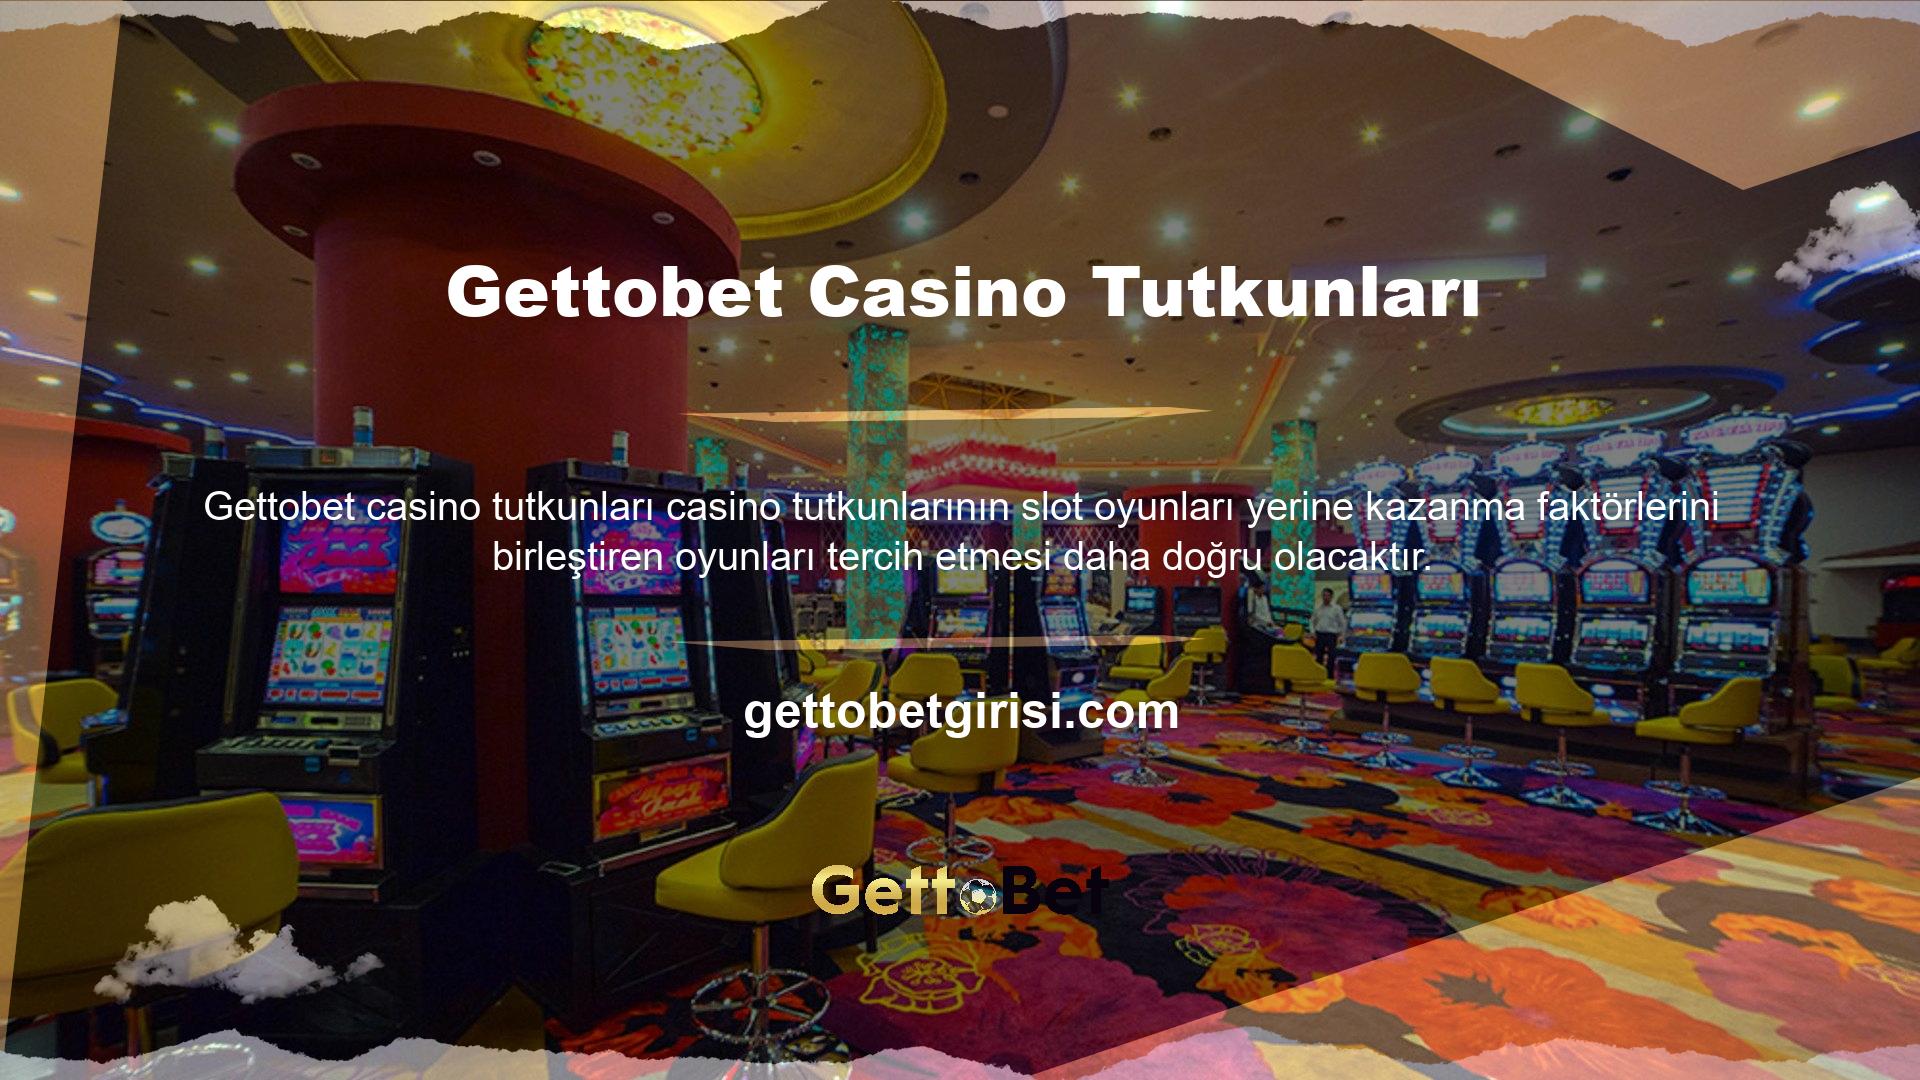 Slot makinesi oyunu, casino oyunu deneyiminin bir parçasıdır